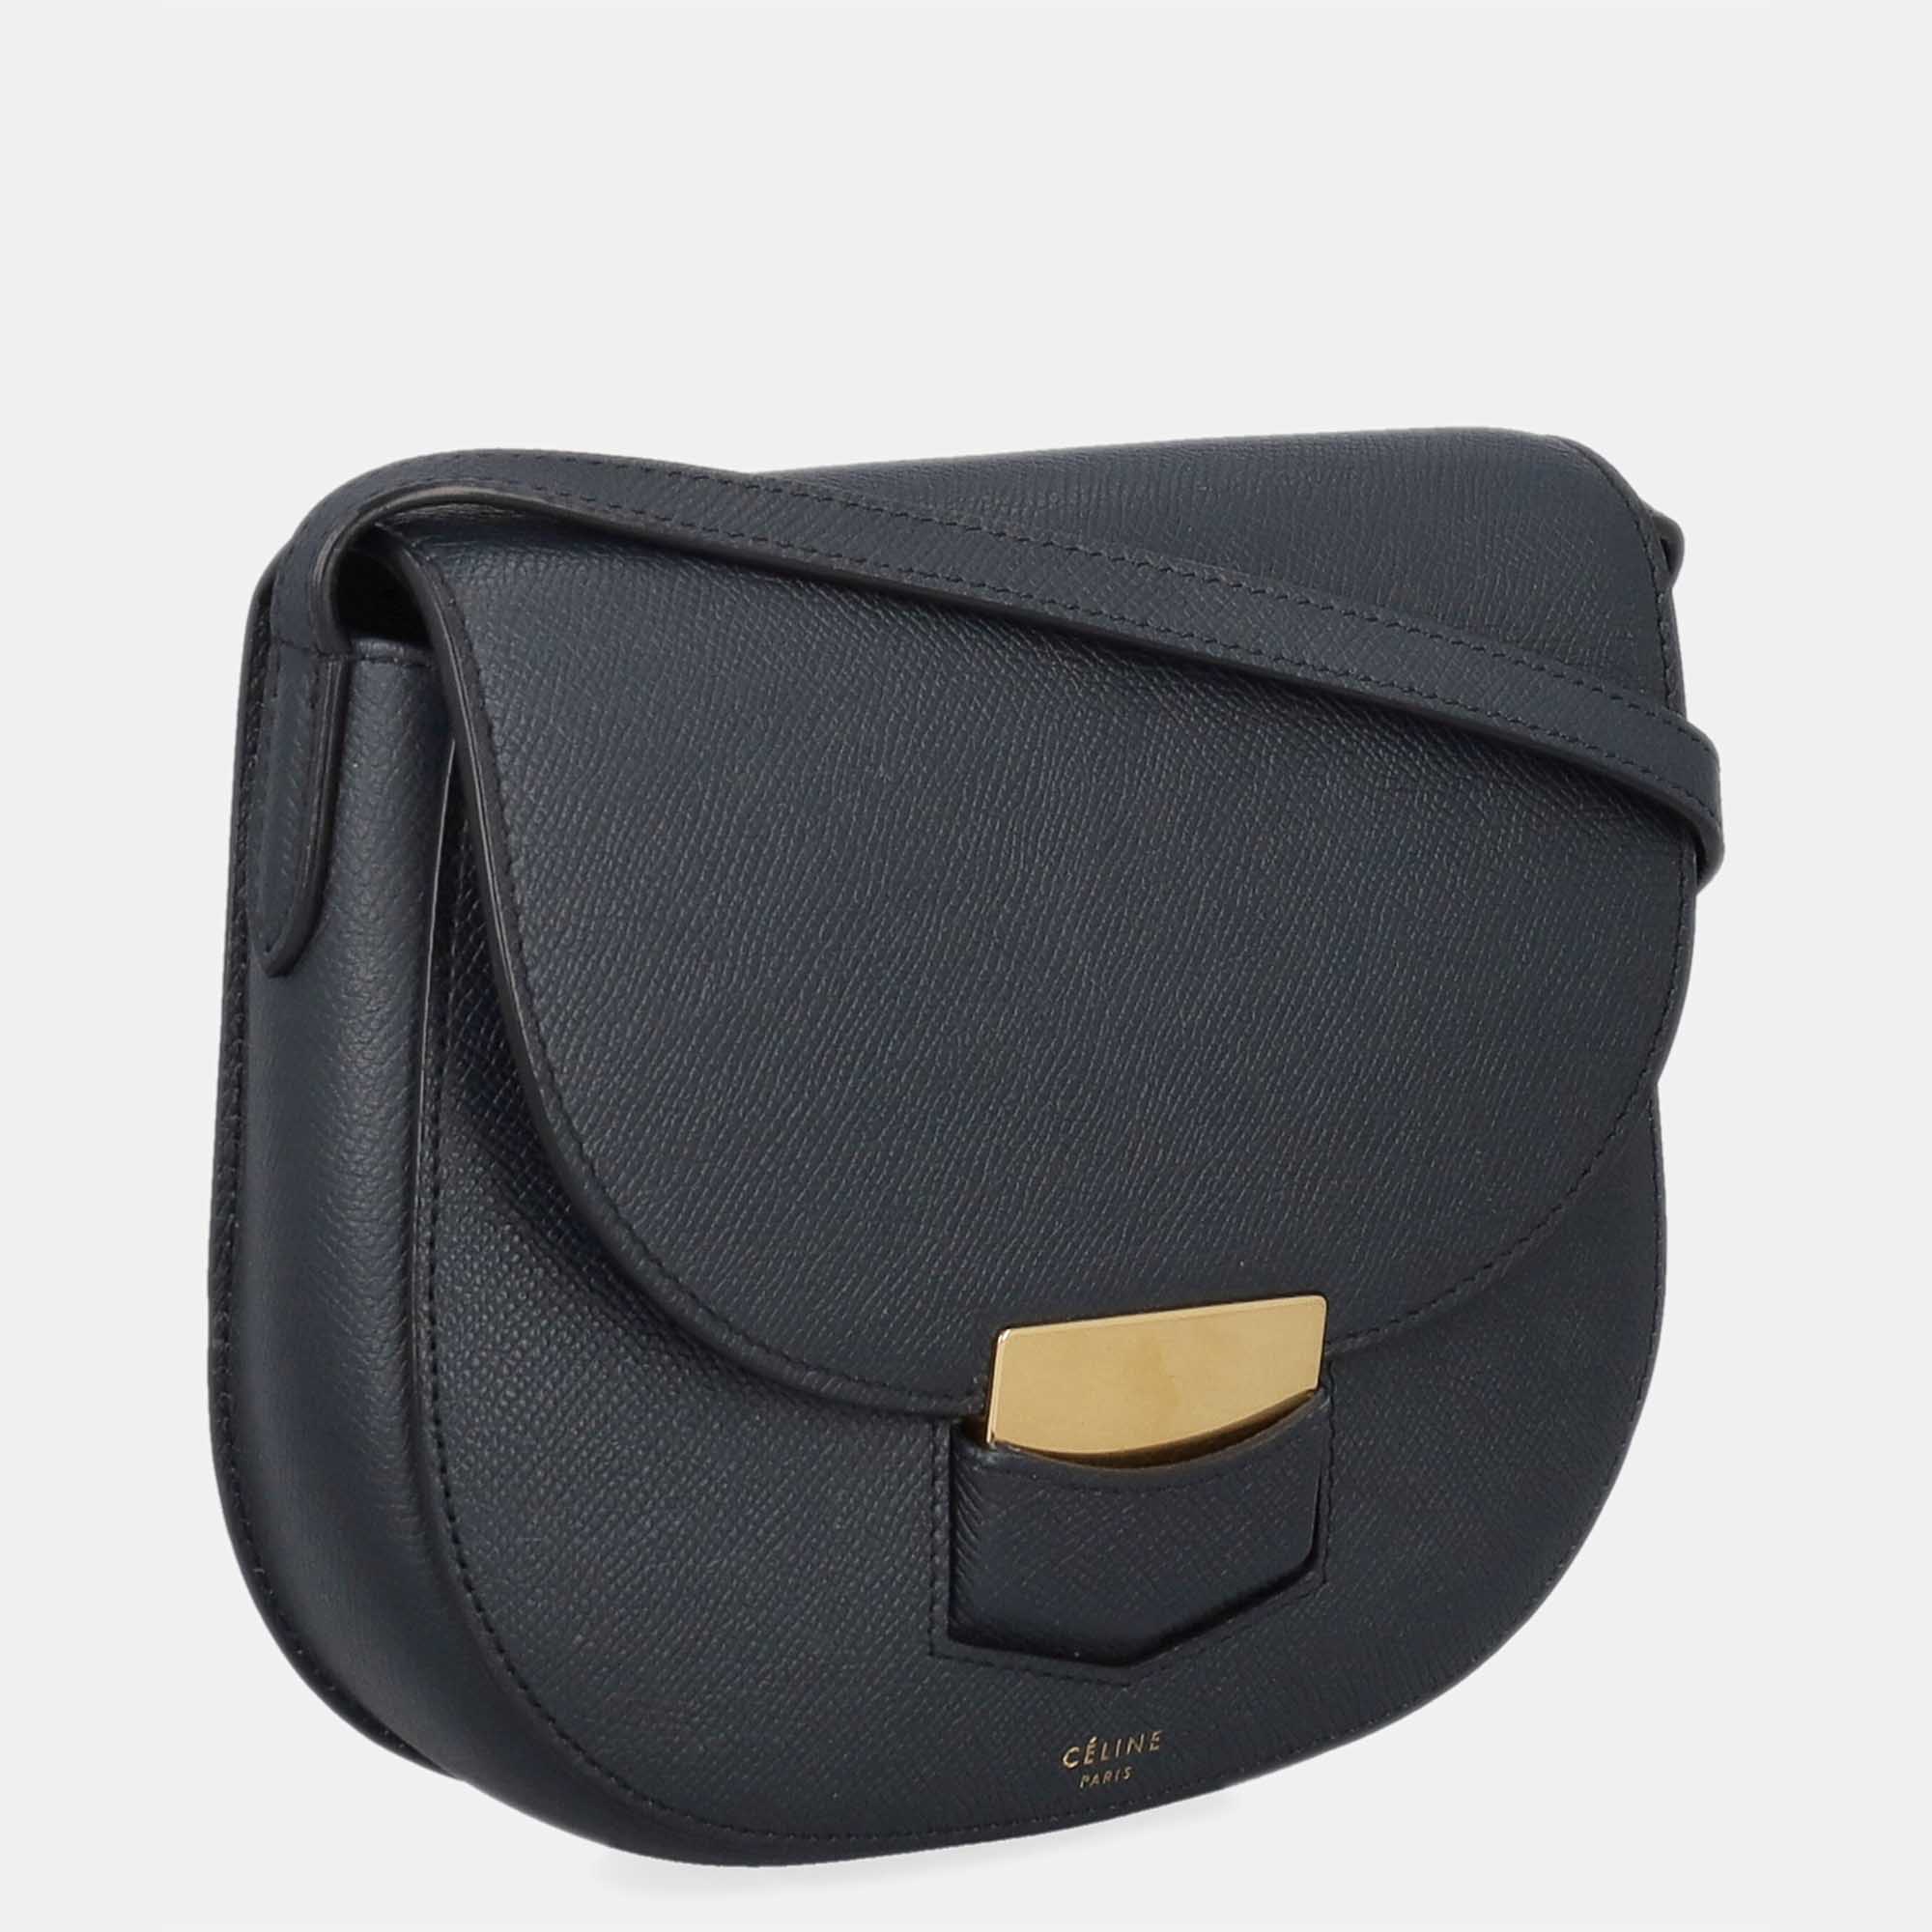 Celine Trotteur -  Women's Leather Shoulder Bag - Navy - One Size